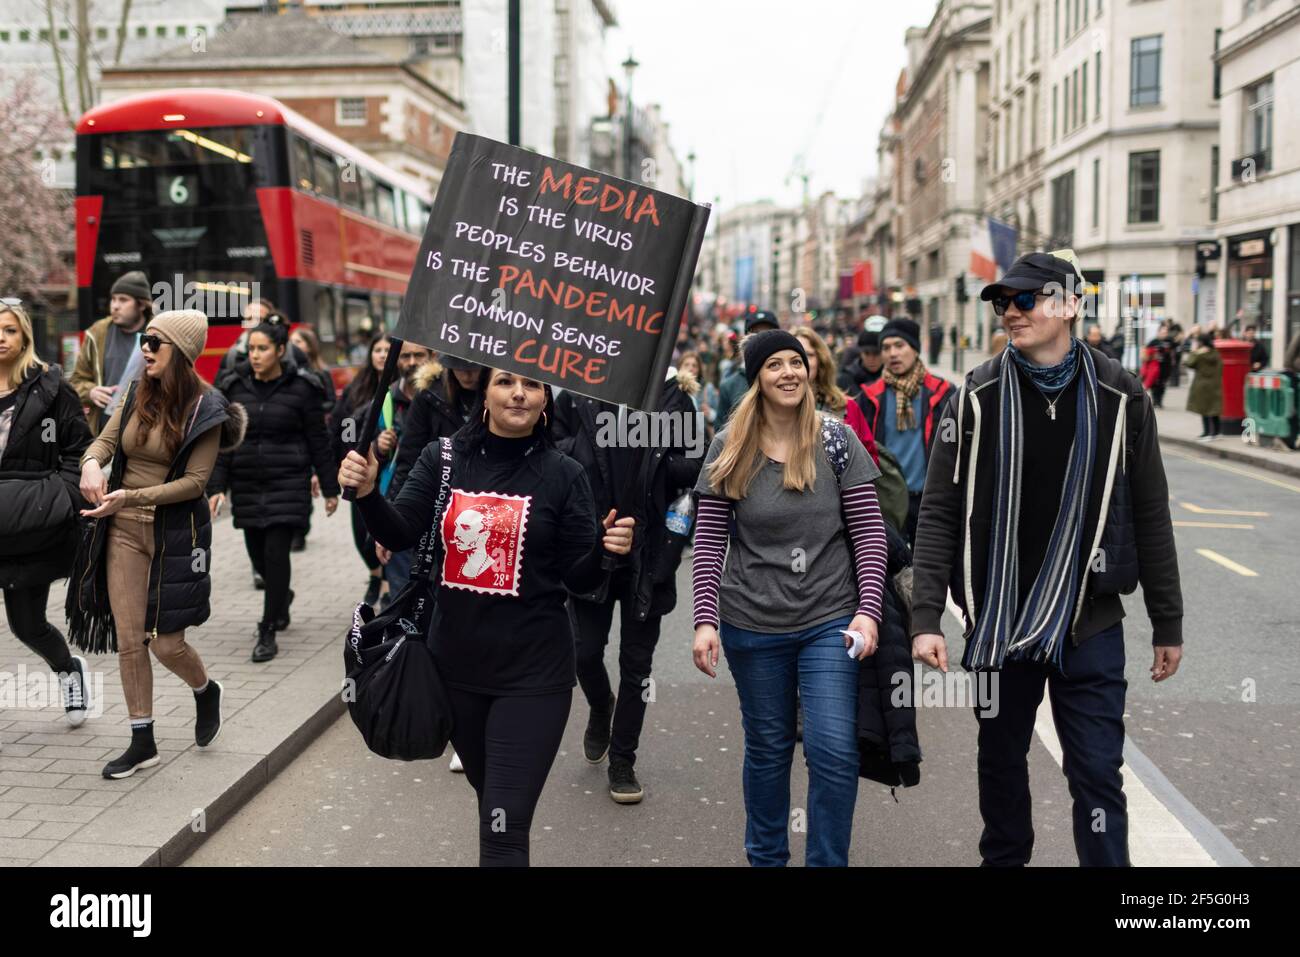 Manifestation contre le confinement et la vaccination contre Covid-19, Londres, 20 mars 2021. Des manifestants en marche. Banque D'Images